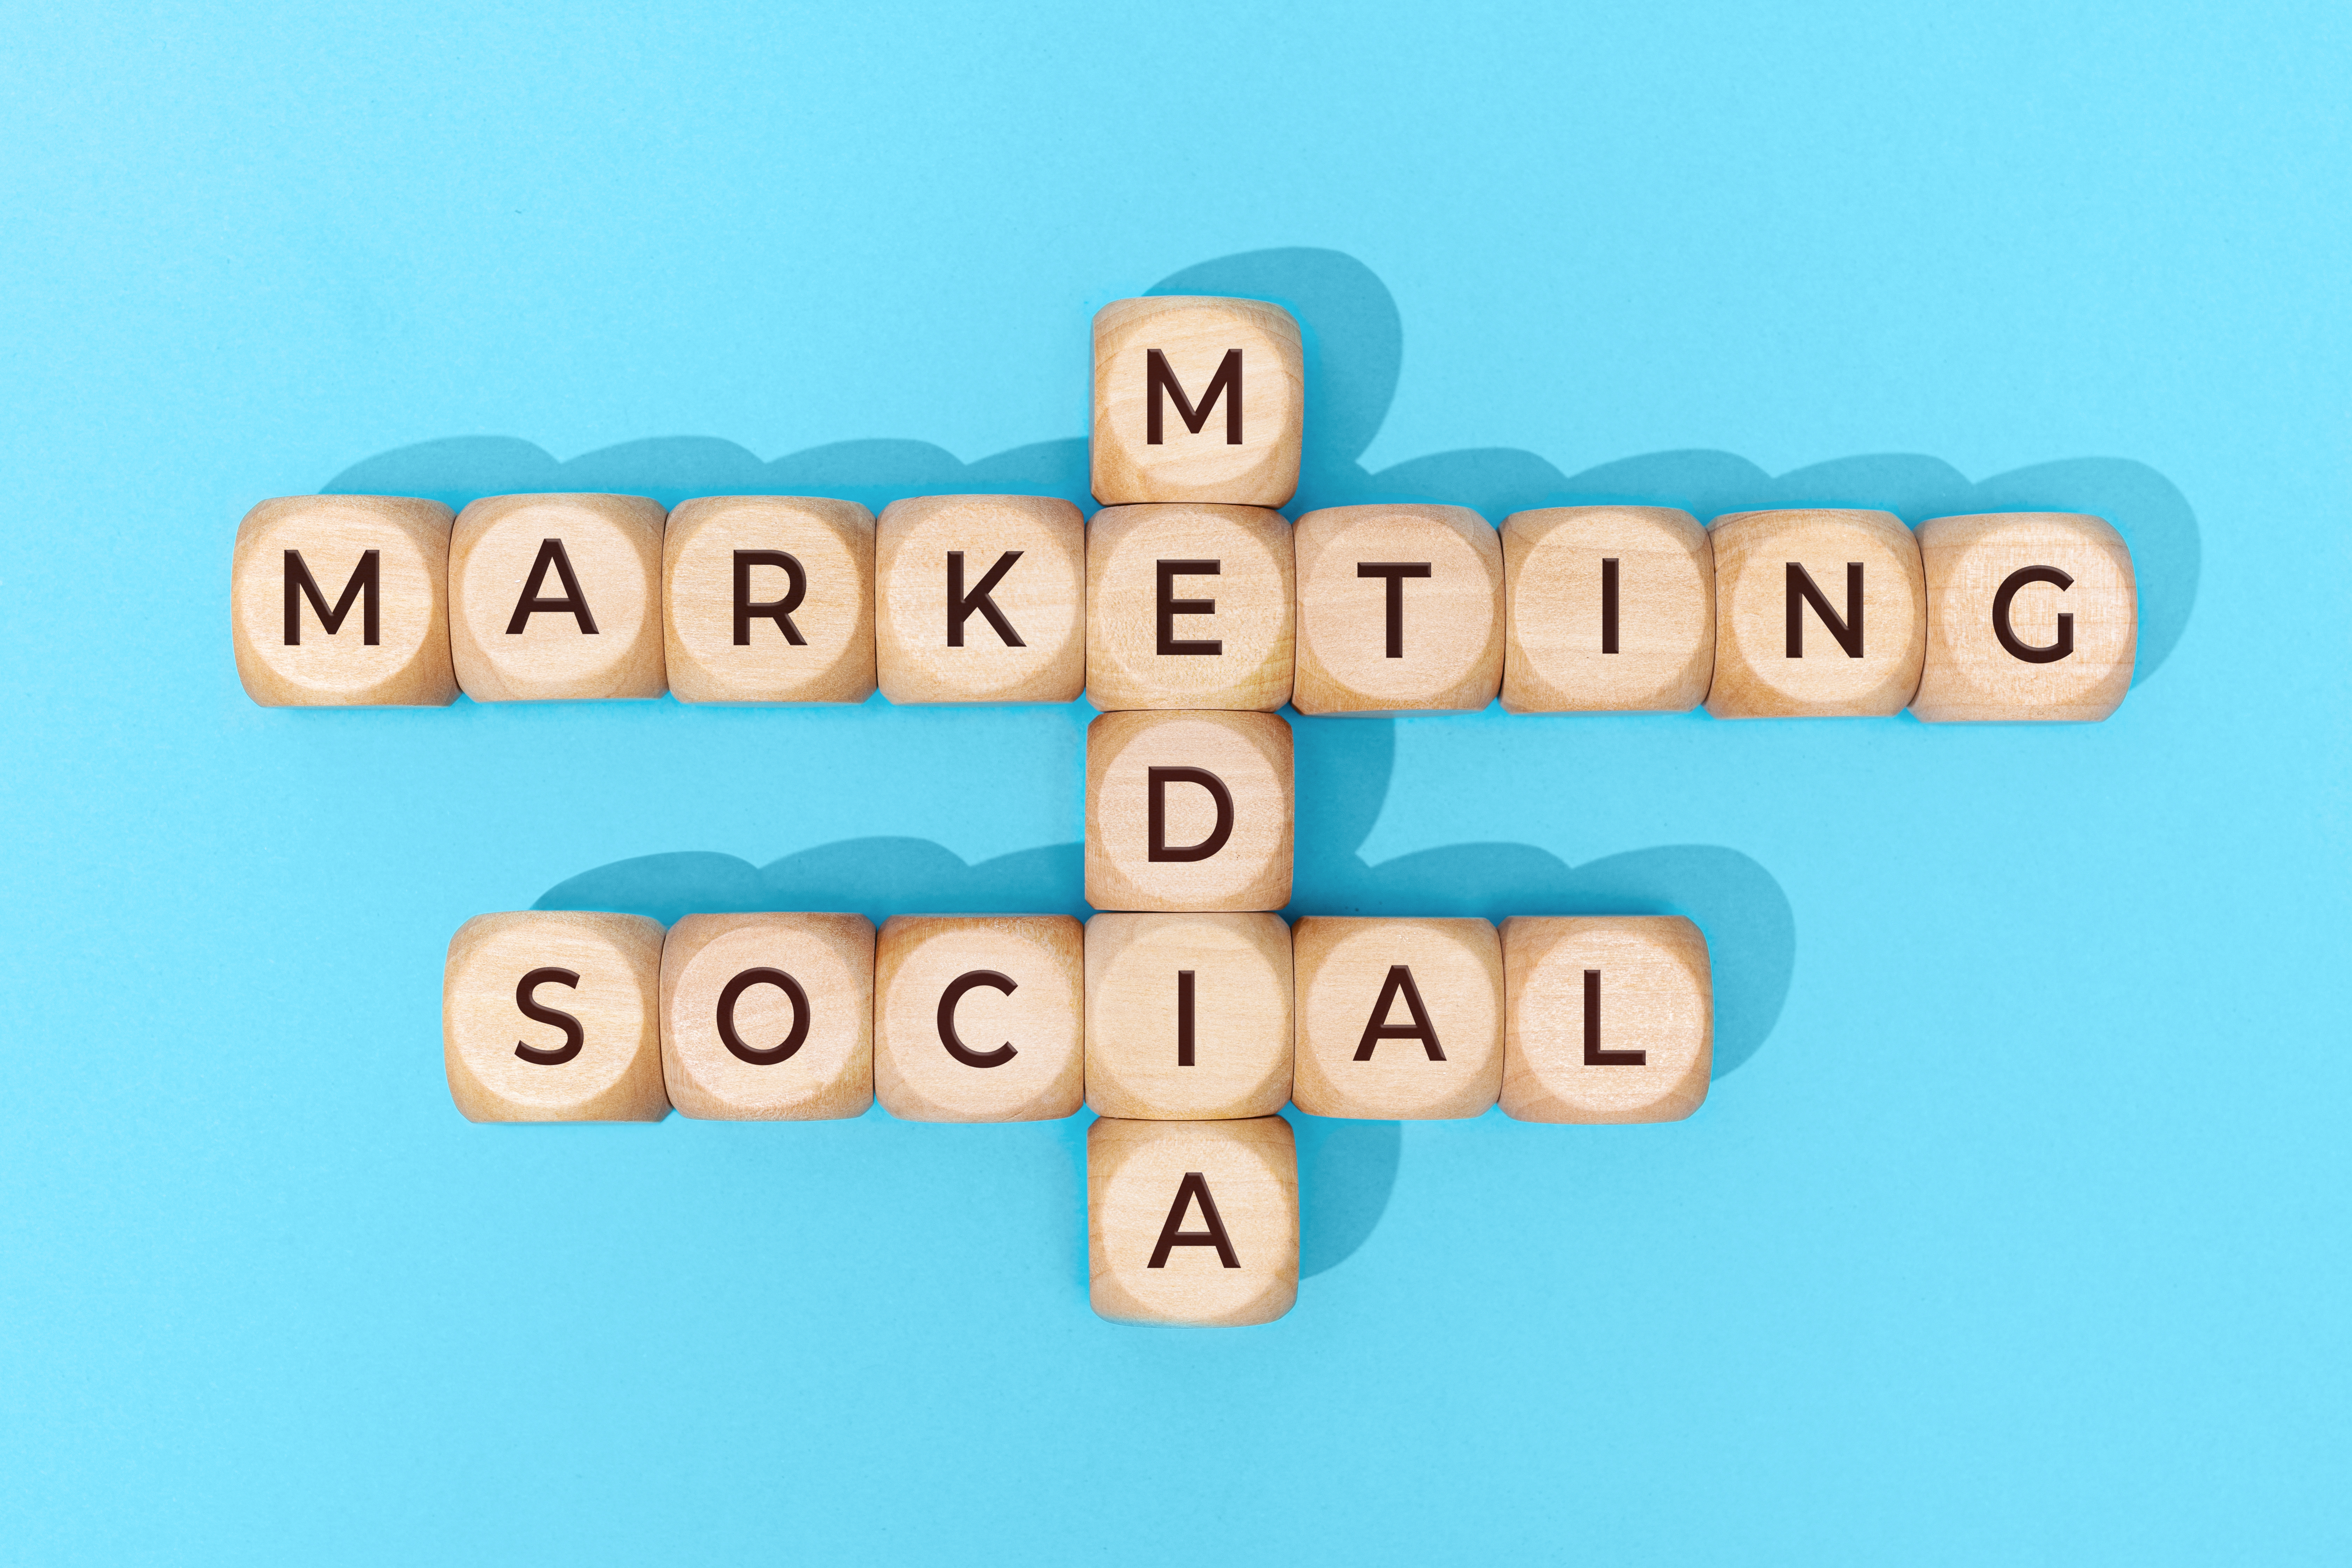 Social Media Marketing words on wooden blocks